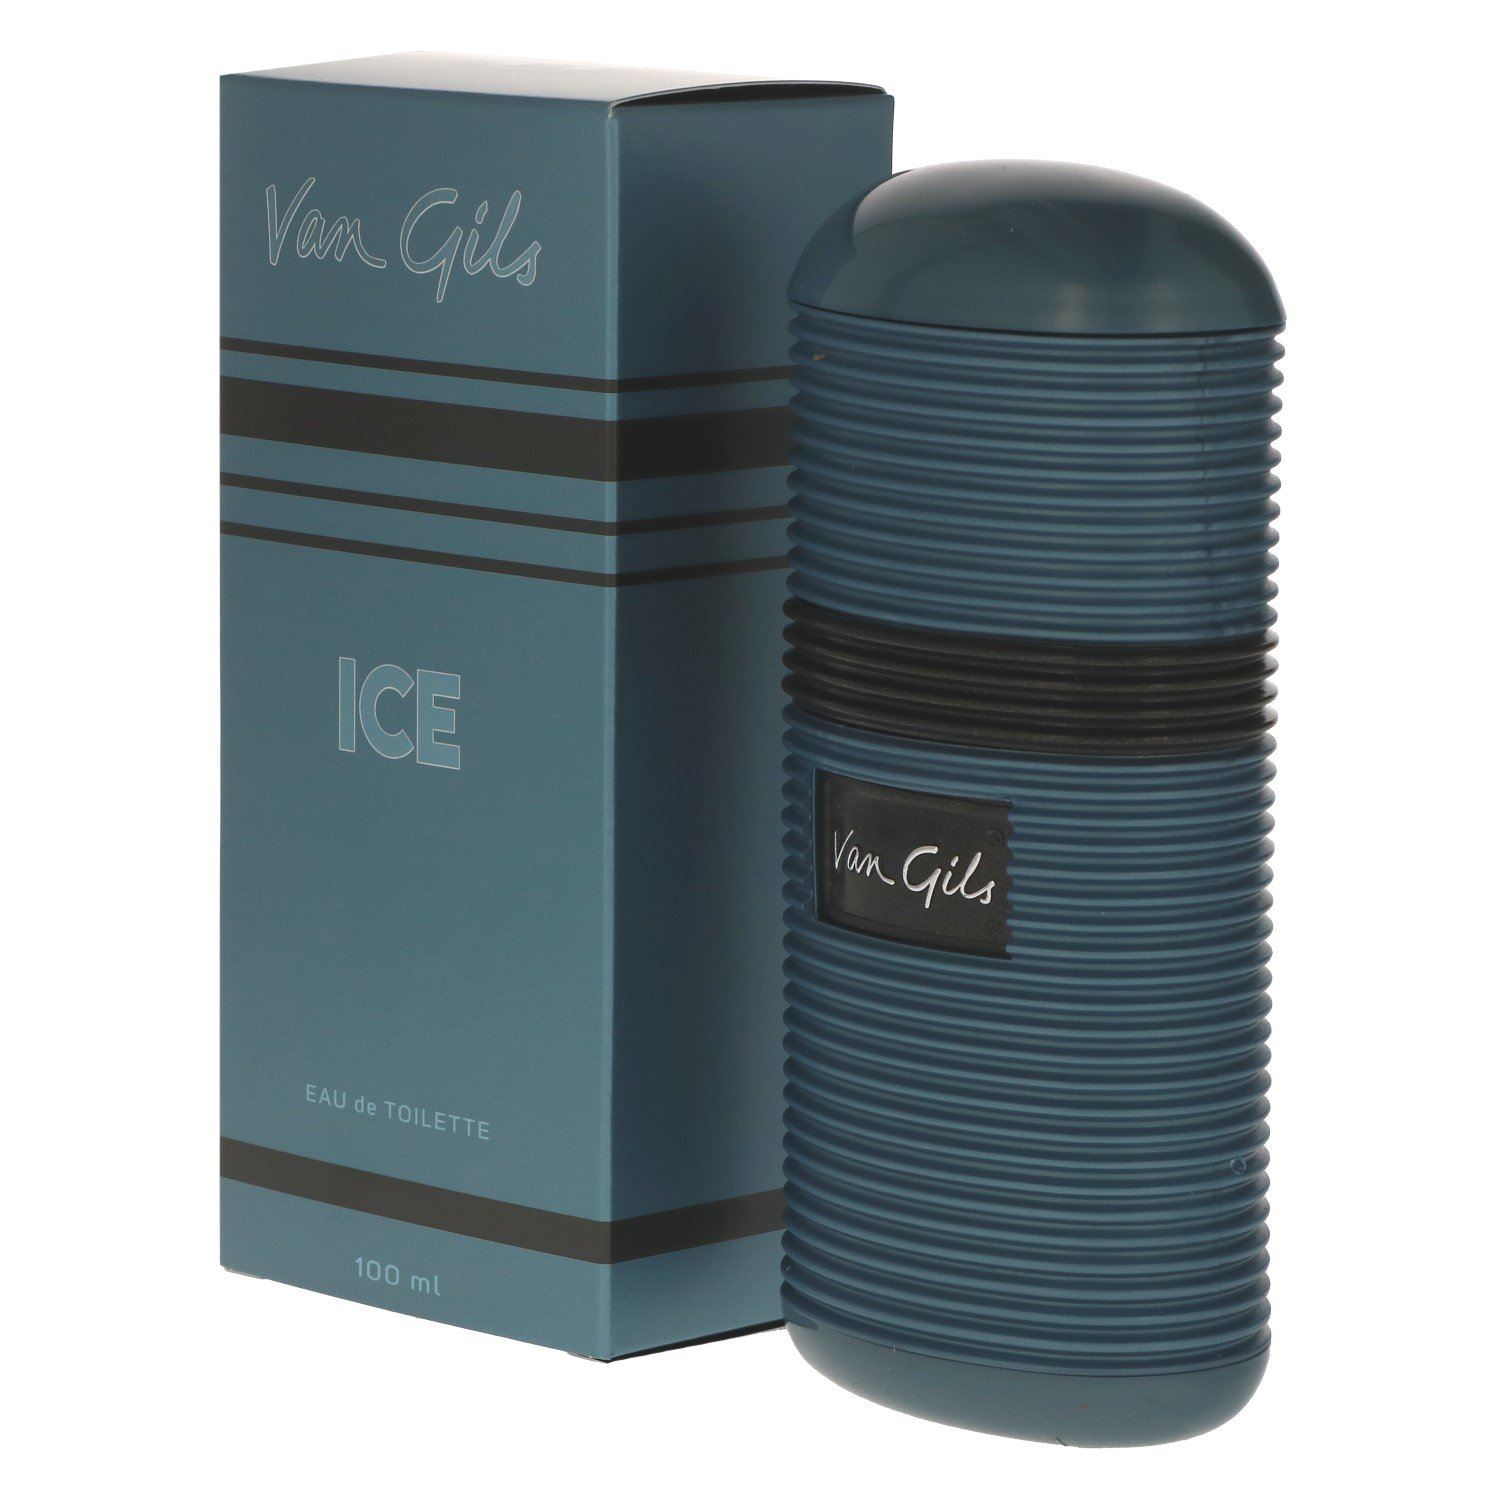 Van Gils - Ice - eau de toilette 100ml - For men